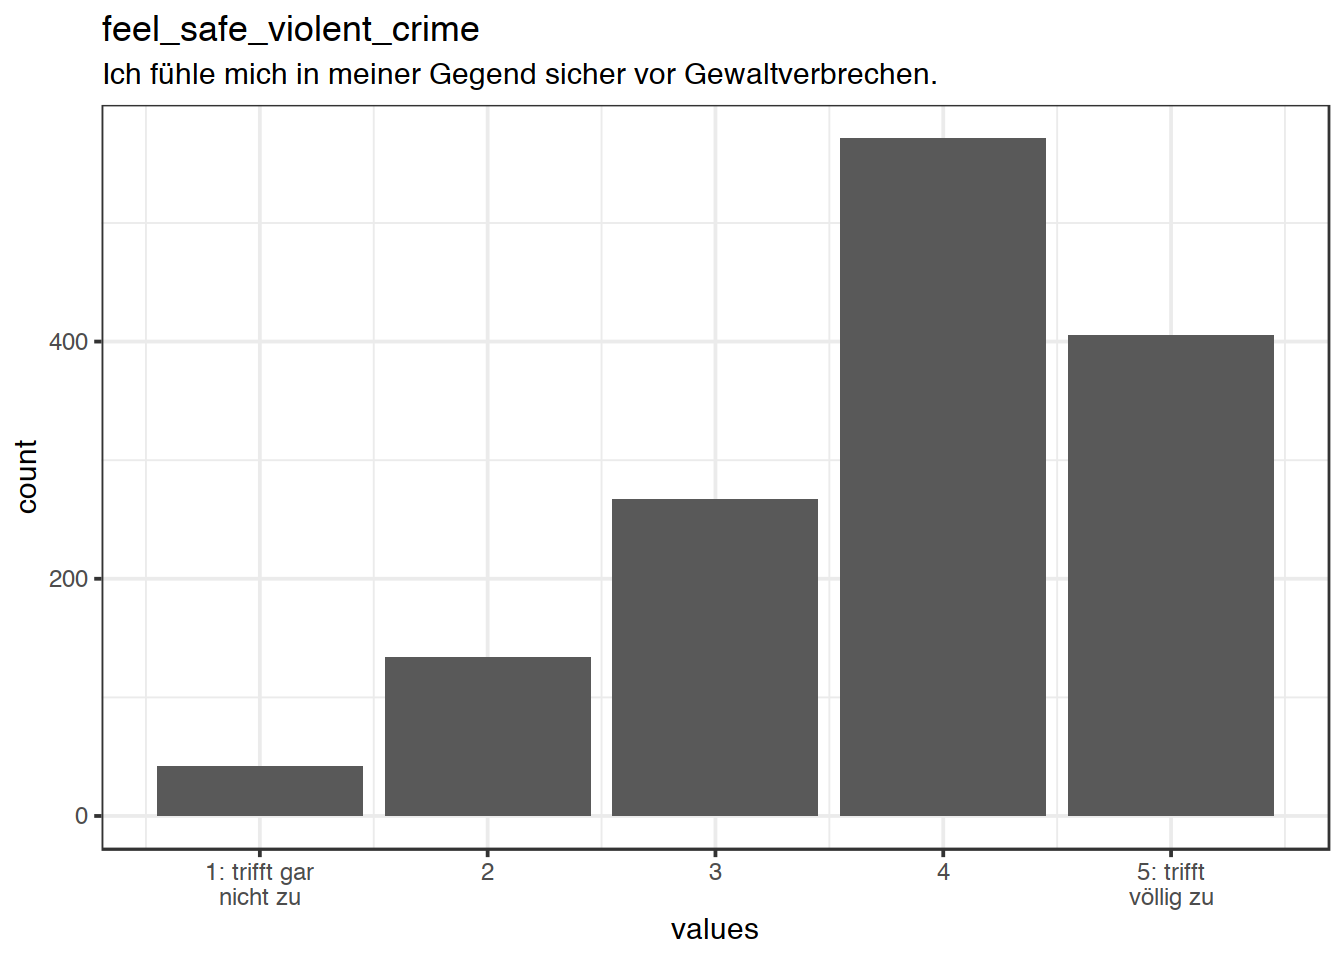 Distribution of values for feel_safe_violent_crime